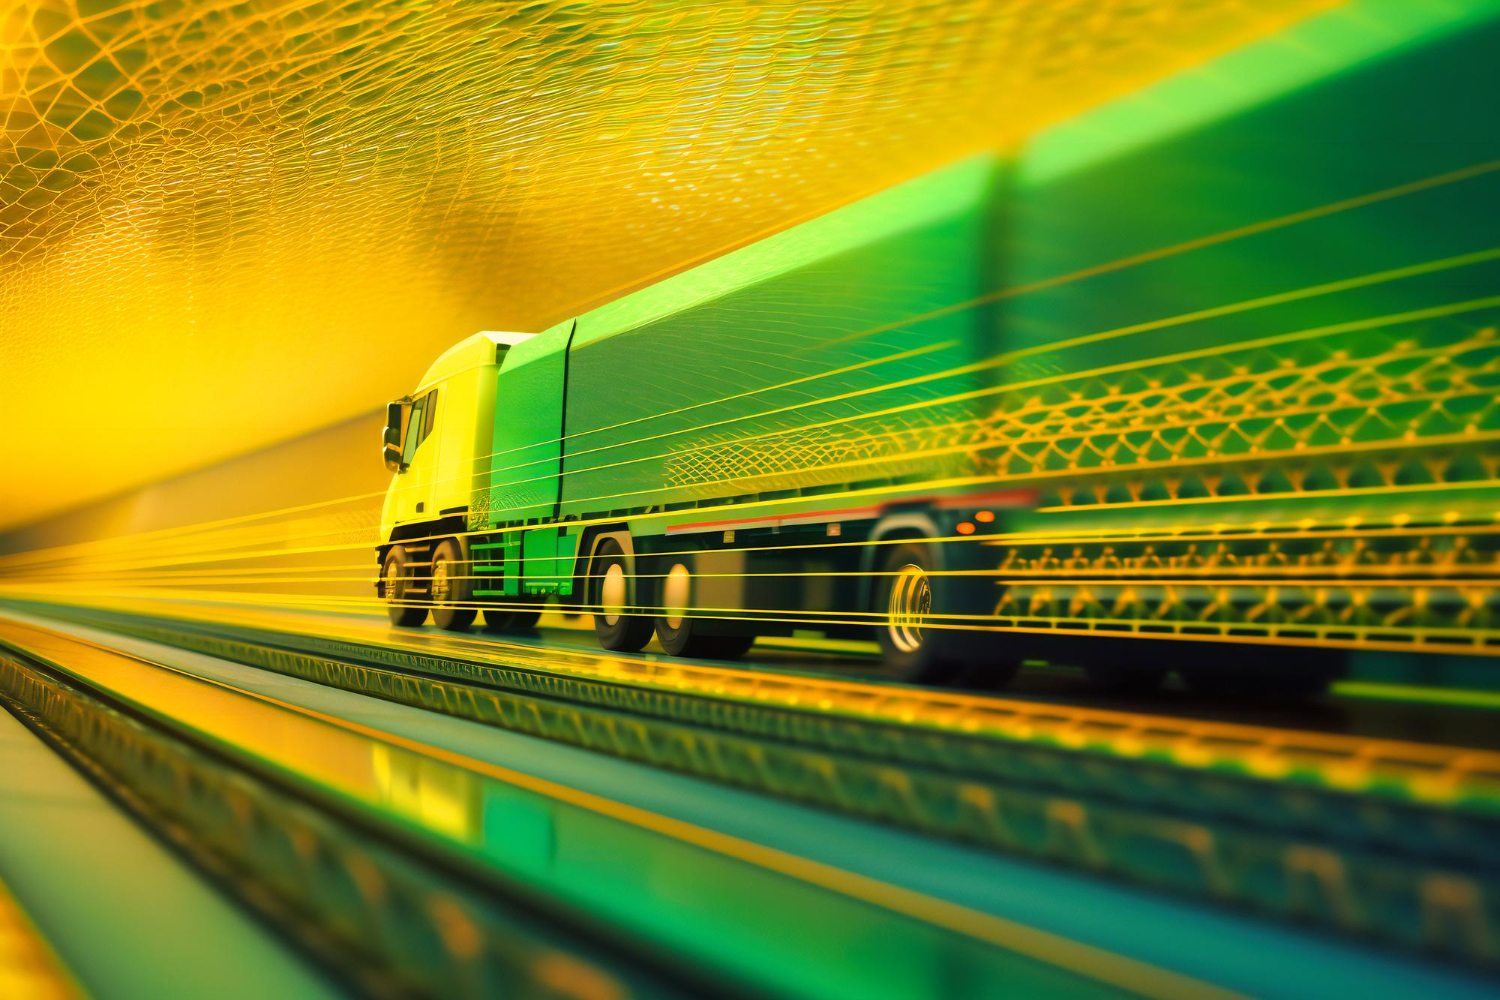 logistica de negocios globais unem transporte ferroviario de carga aerea e transporte maritimo para distribuicao perfeita de carga de conteineres 1